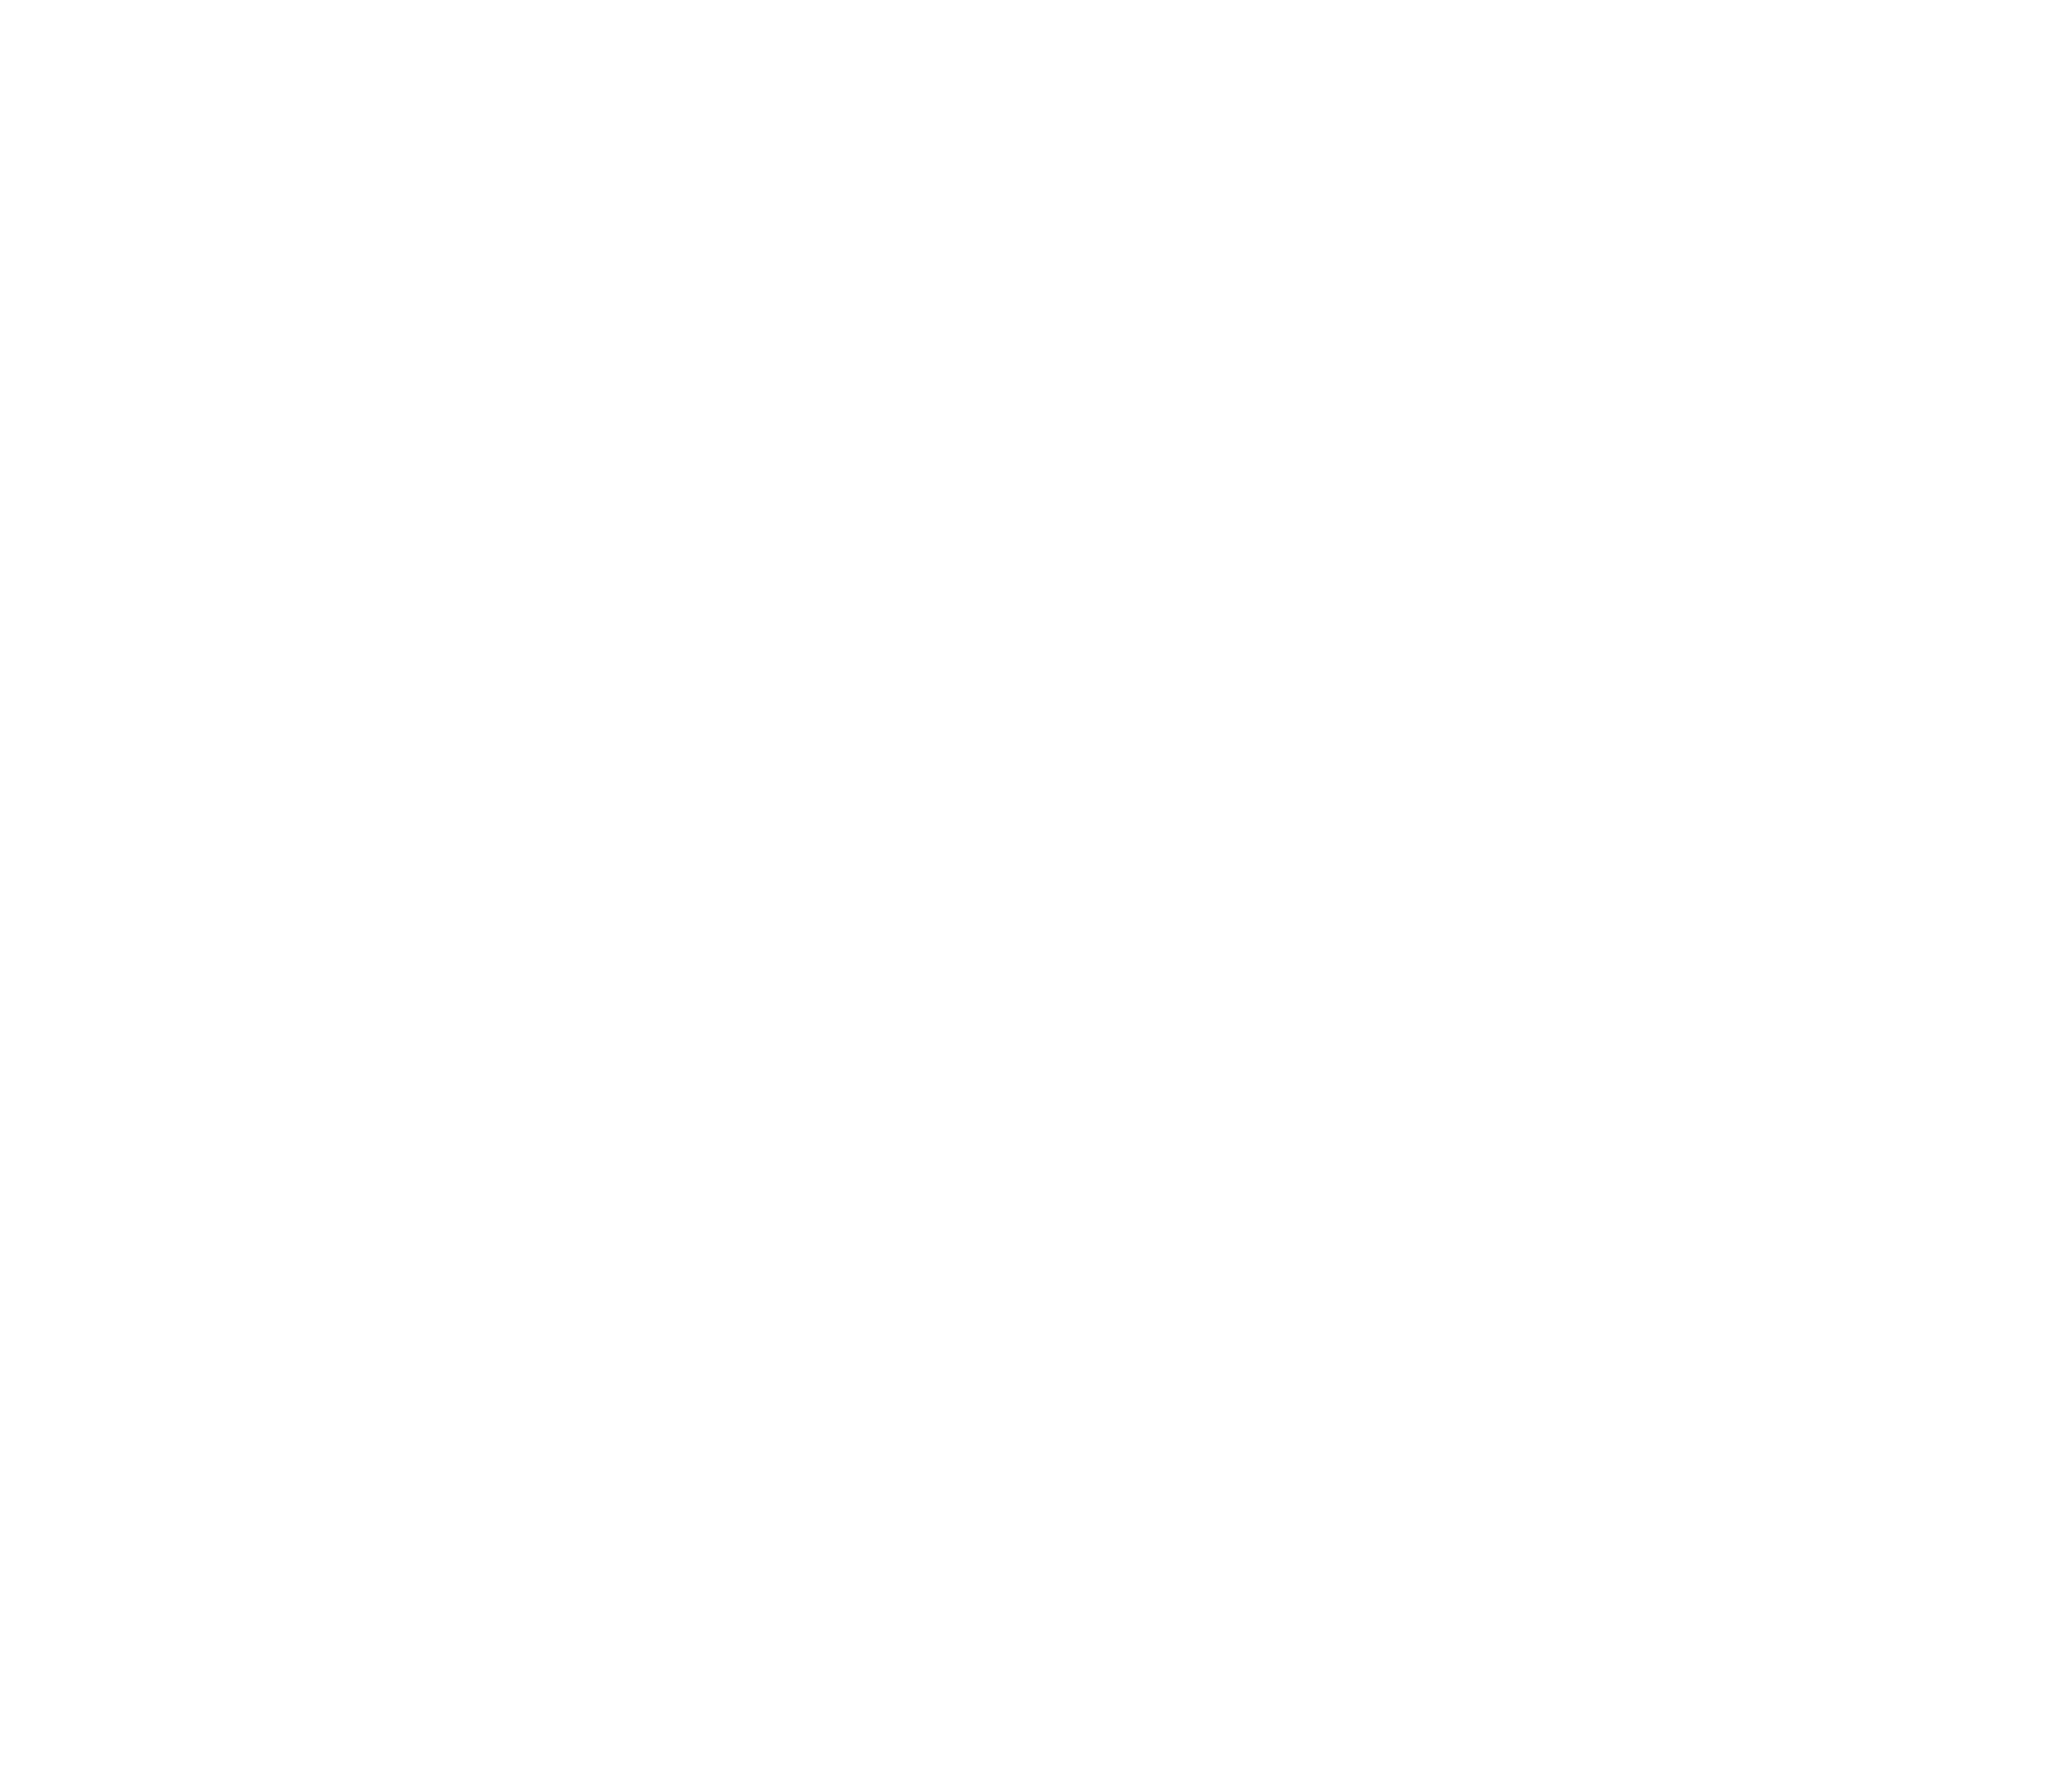 Stephen Olker Photography